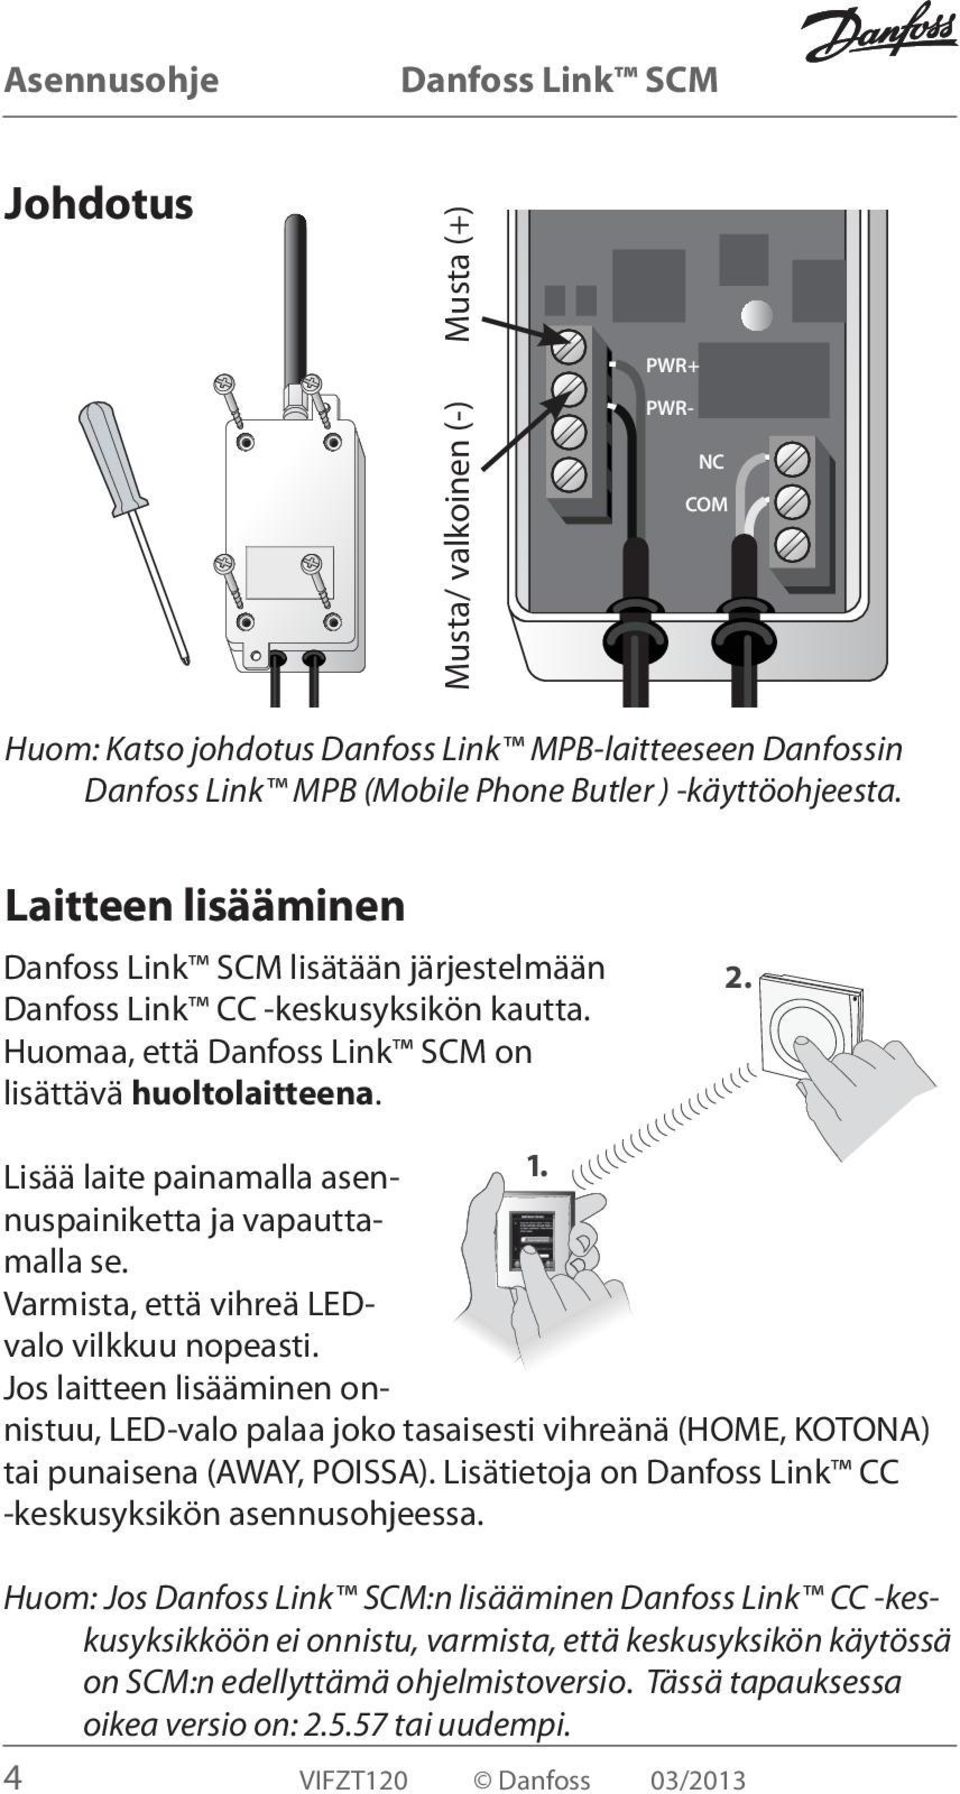 Varmista, että vihreä LEDvalo vilkkuu nopeasti. Jos laitteen lisääminen onnistuu, LED-valo palaa joko tasaisesti vihreänä (HOME, KOTONA) tai punaisena (AWAY, POISSA).